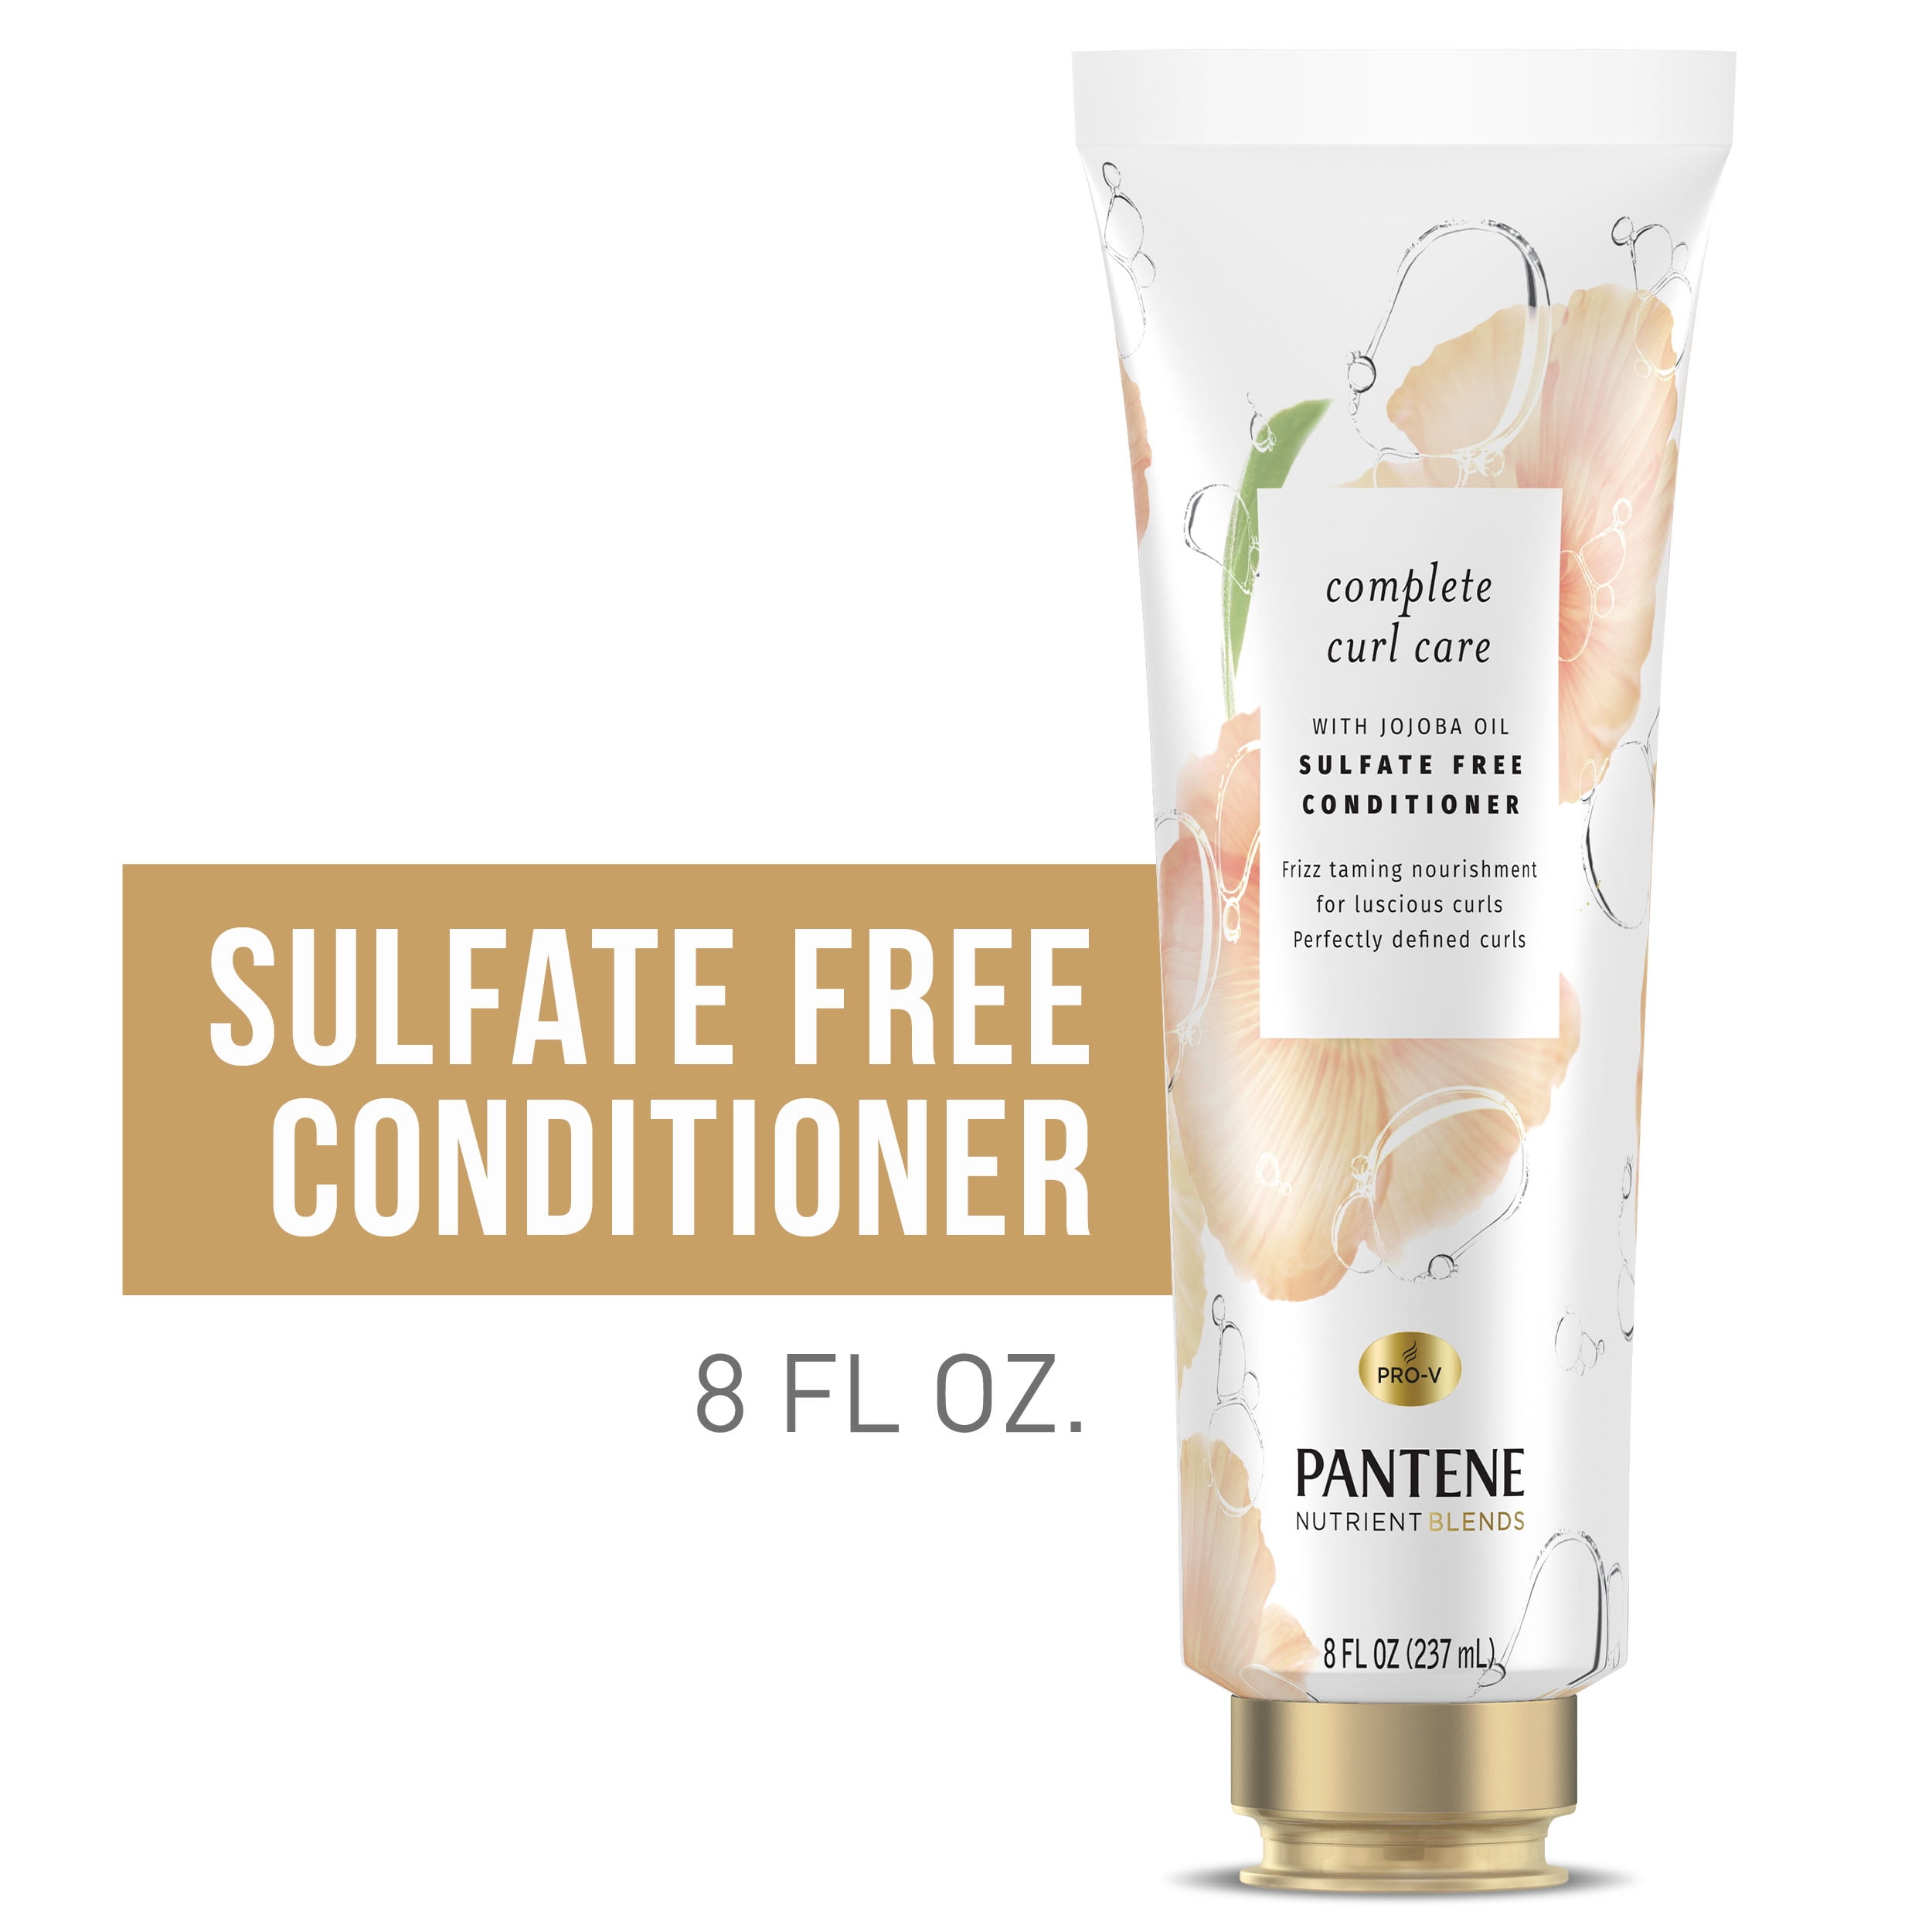 Pantene Nutrient Blends Conditioner, Complete Curl Care, 8.0 fl oz